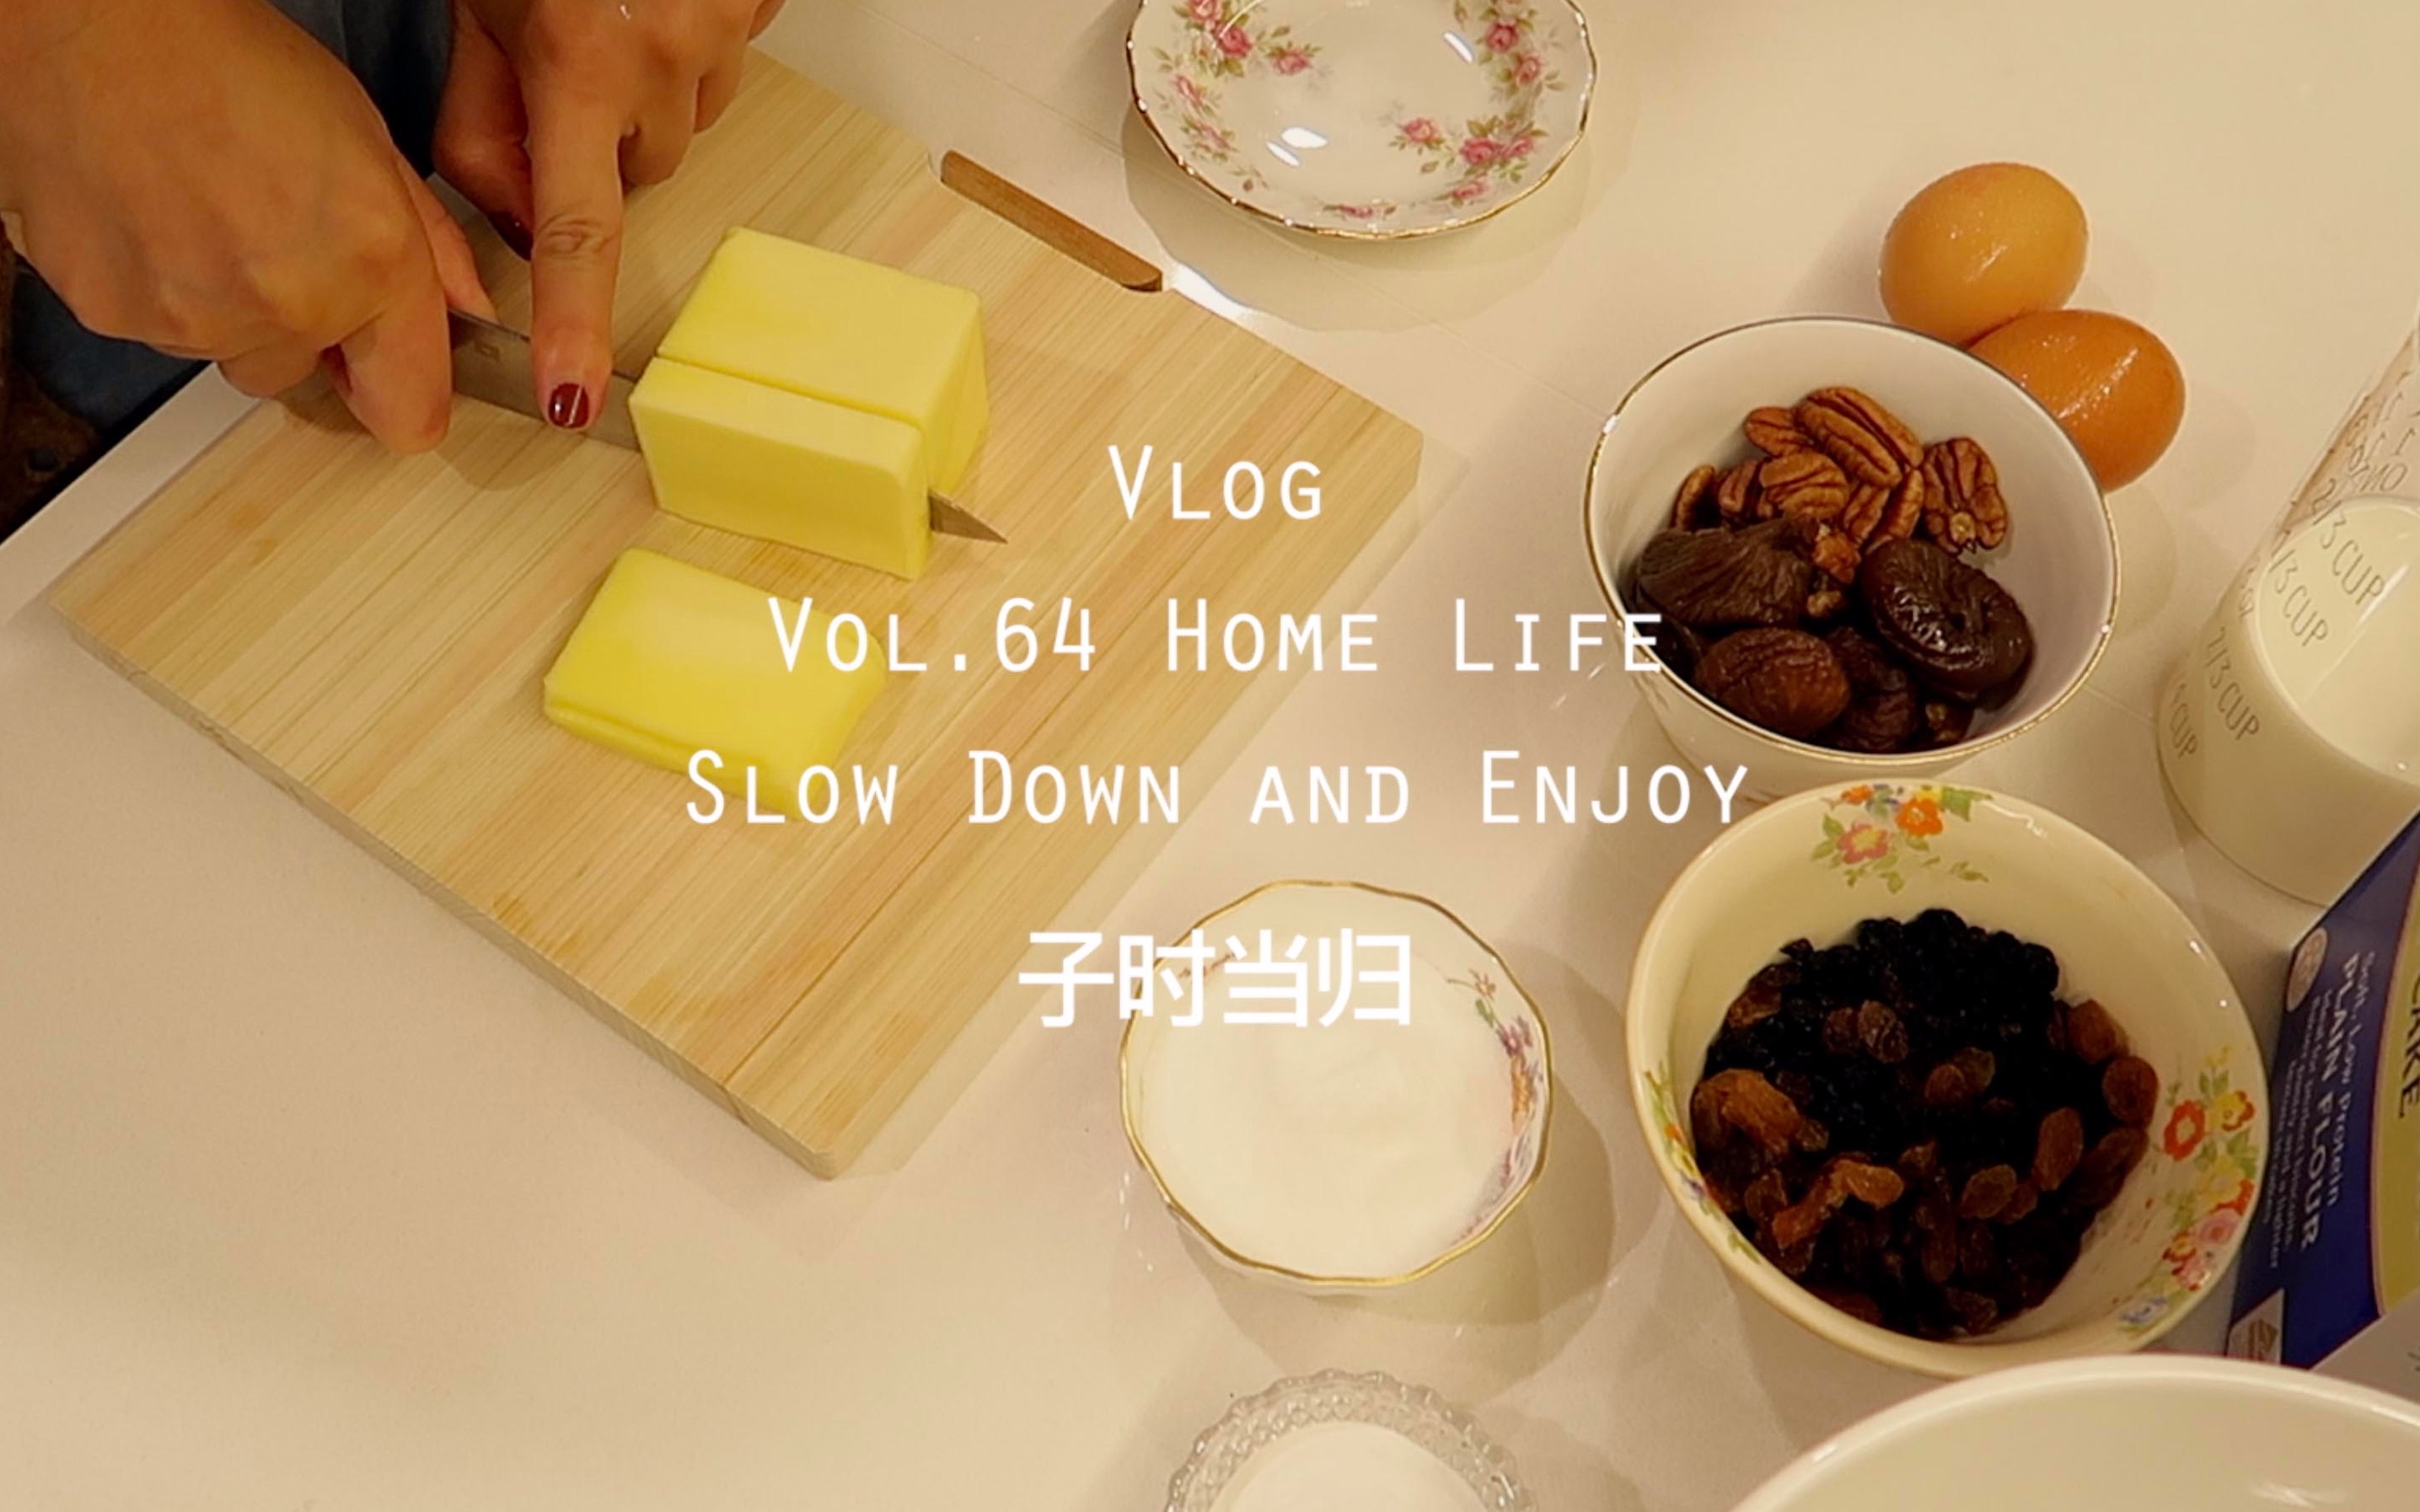 【当归Vlog】萝卜炖牛腩 | 烤司康饼 | 石榴气泡水 | 享受在家的慢生活 | Vol.64